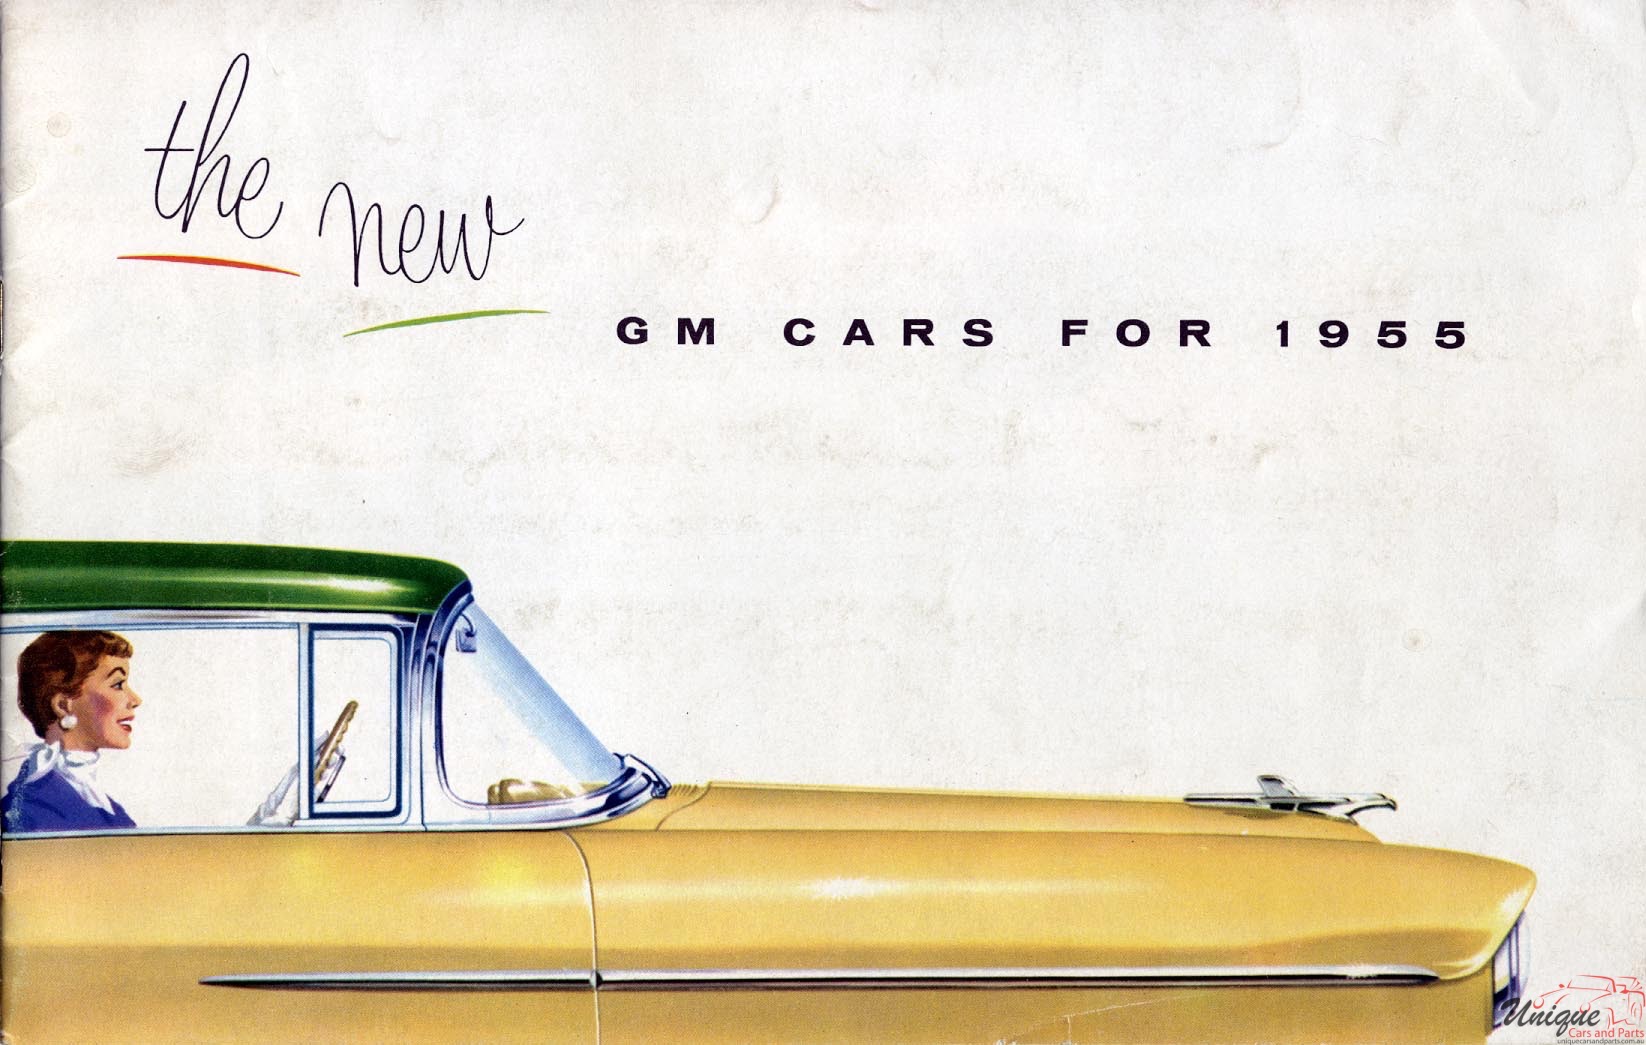 1955 General Motors